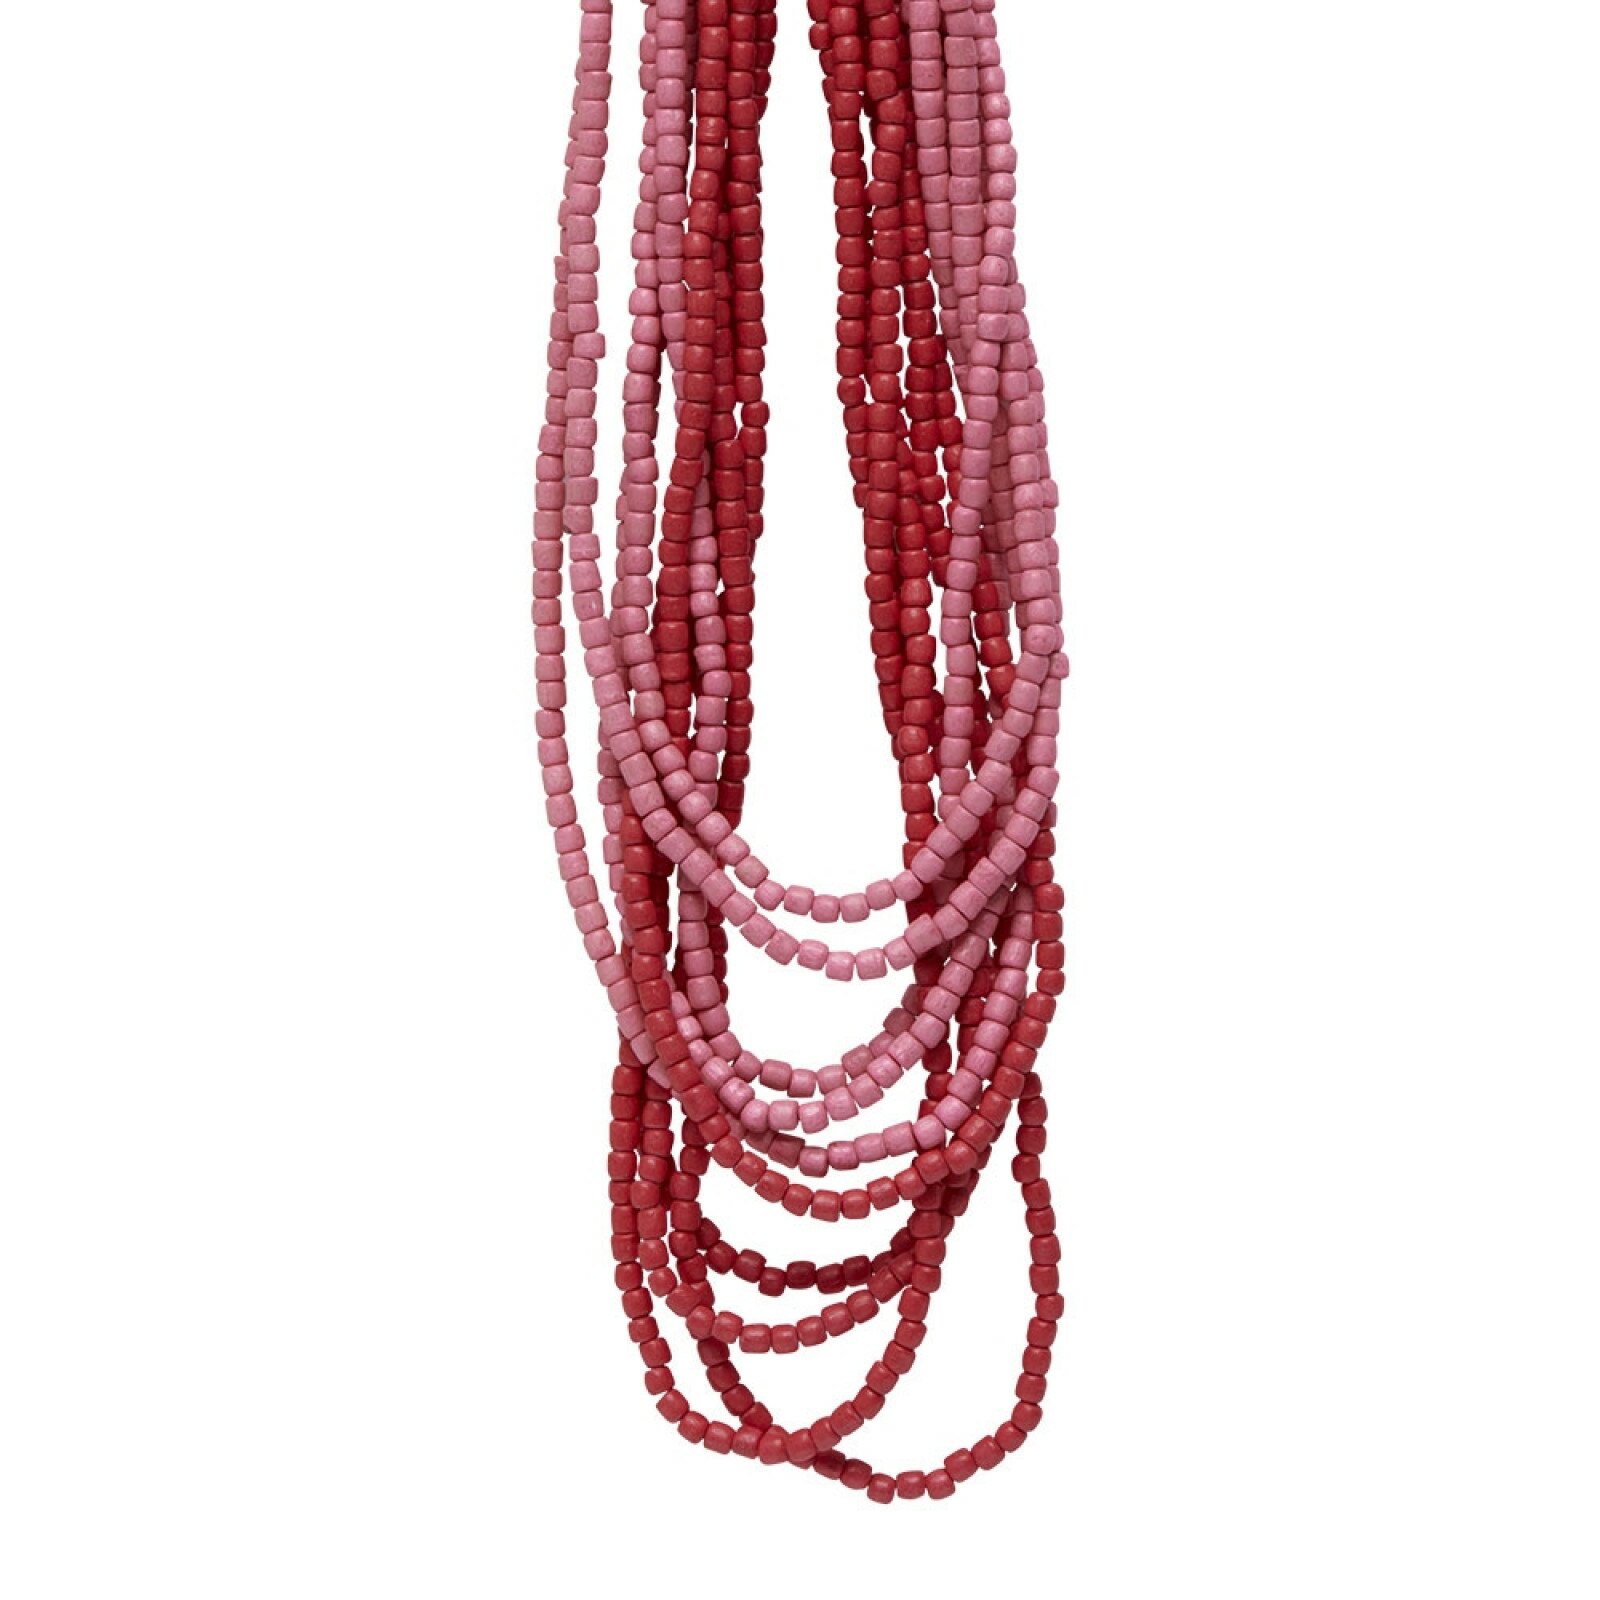 Billede af Halskæde med træperler i røde nuancer